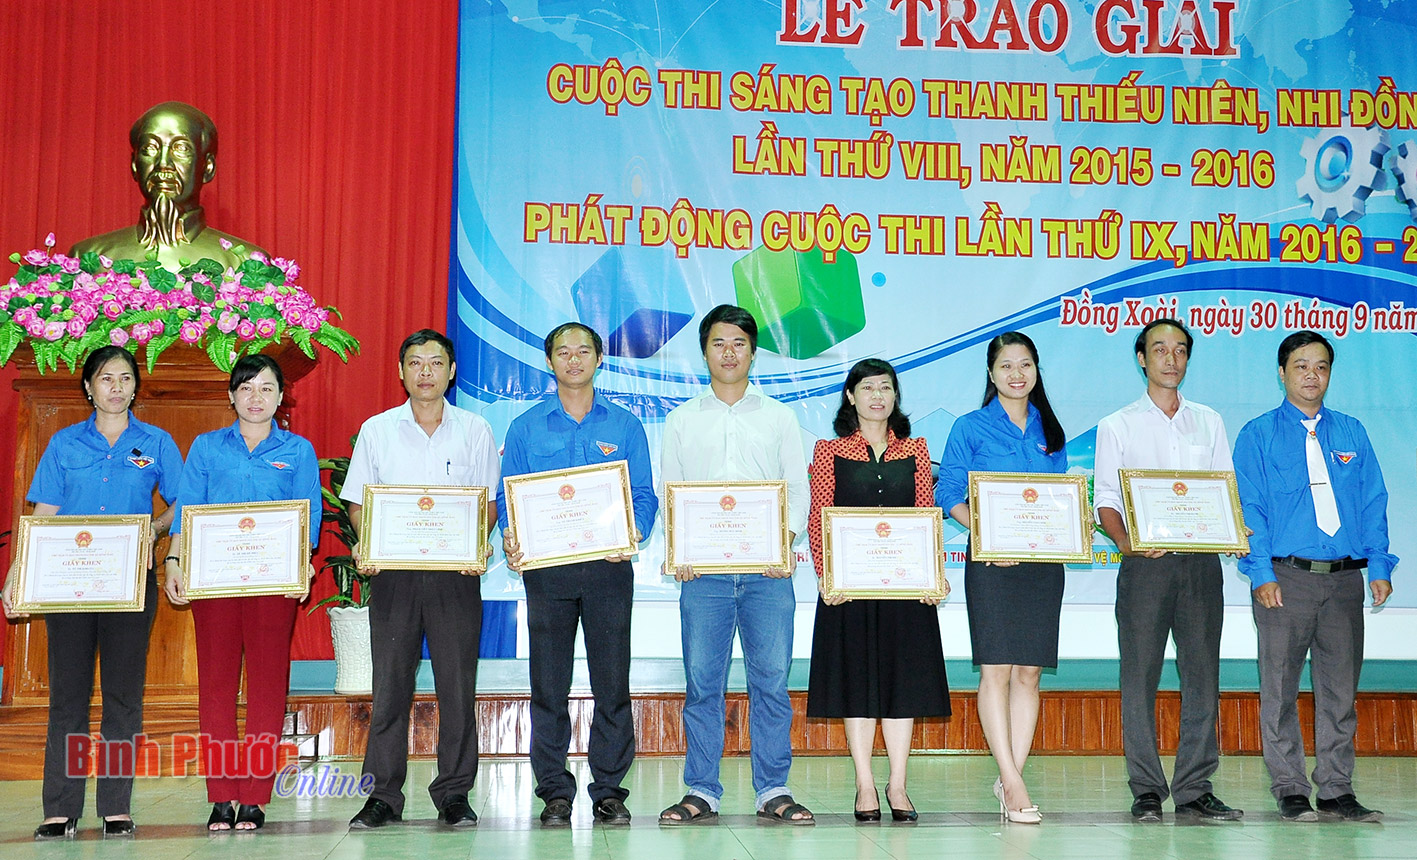 Bí thư Thị đoàn Đồng Xoài Tạ Thanh Bình trao giấy khen cho các cá nhân có thành tích xuất sắc trong công tác triển khai cuộc thi